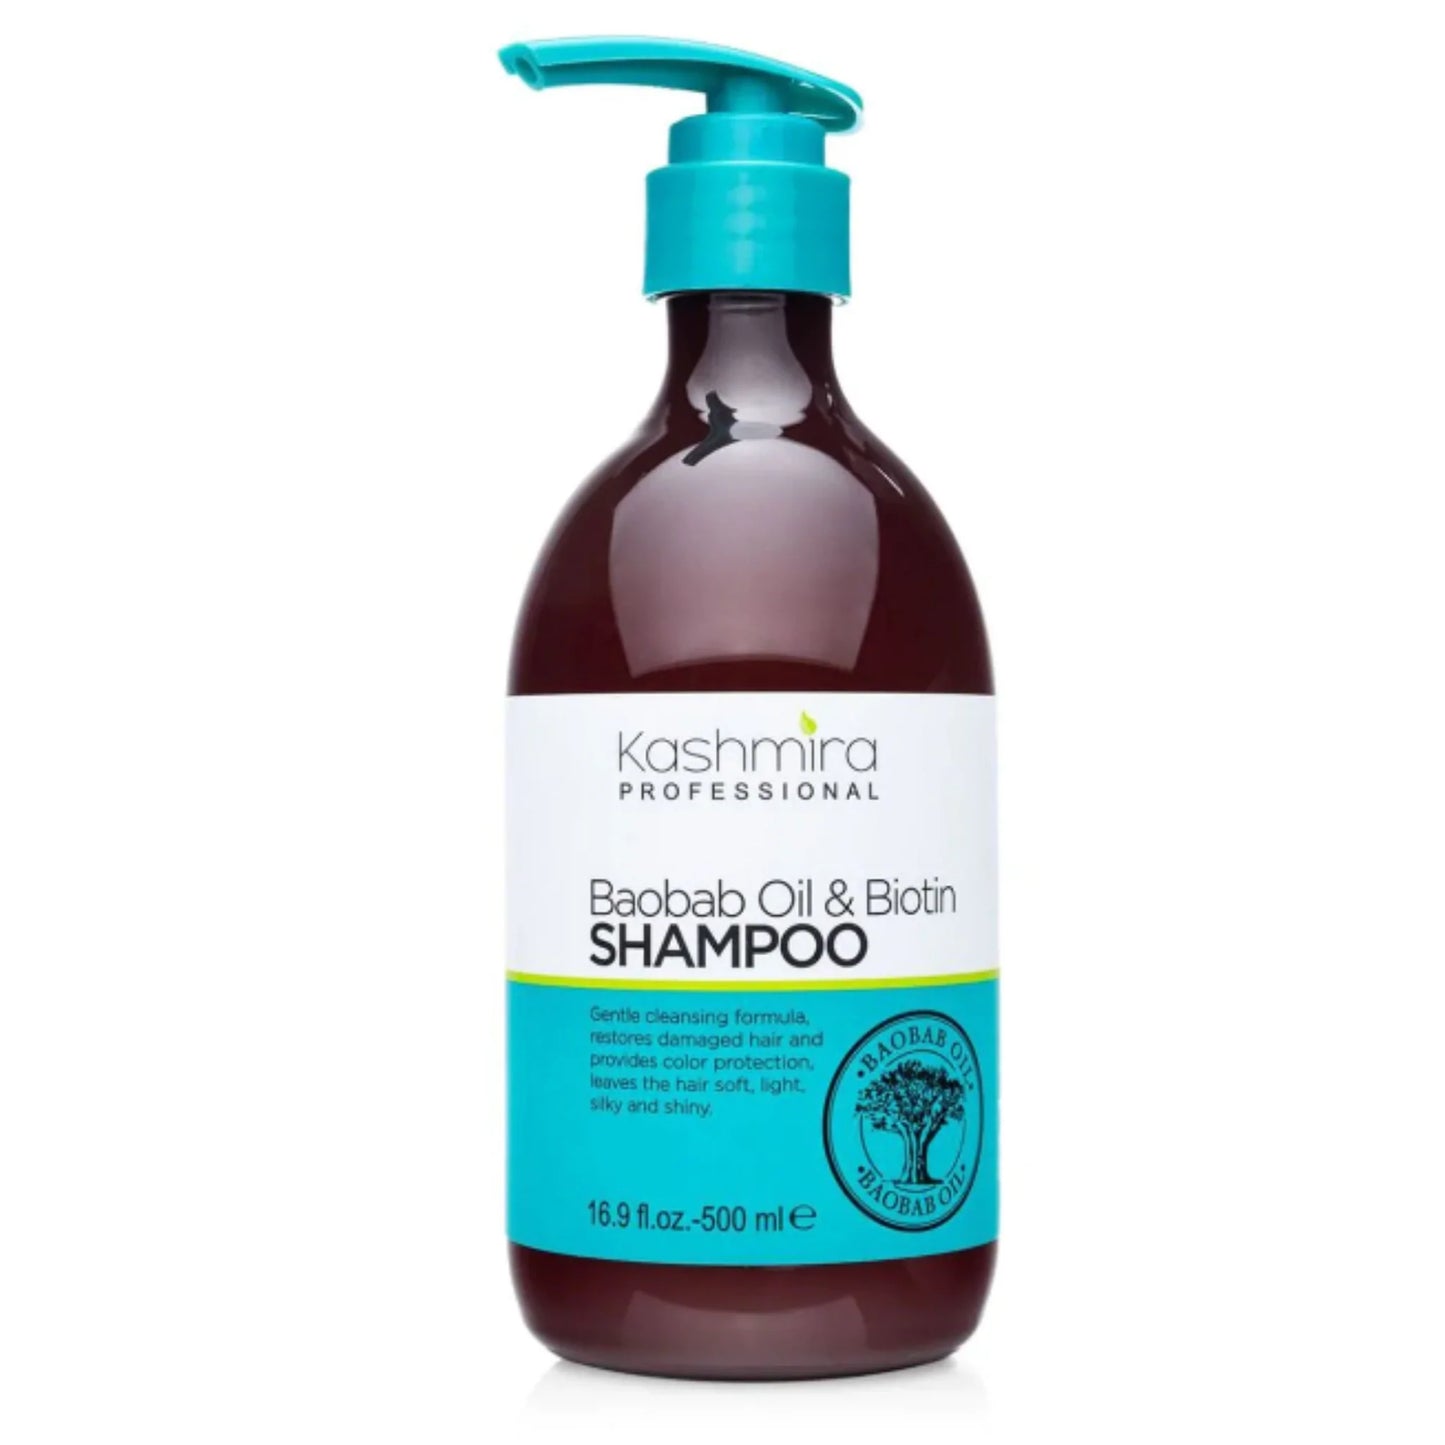 Baobab Oil and Biotin Shampoo